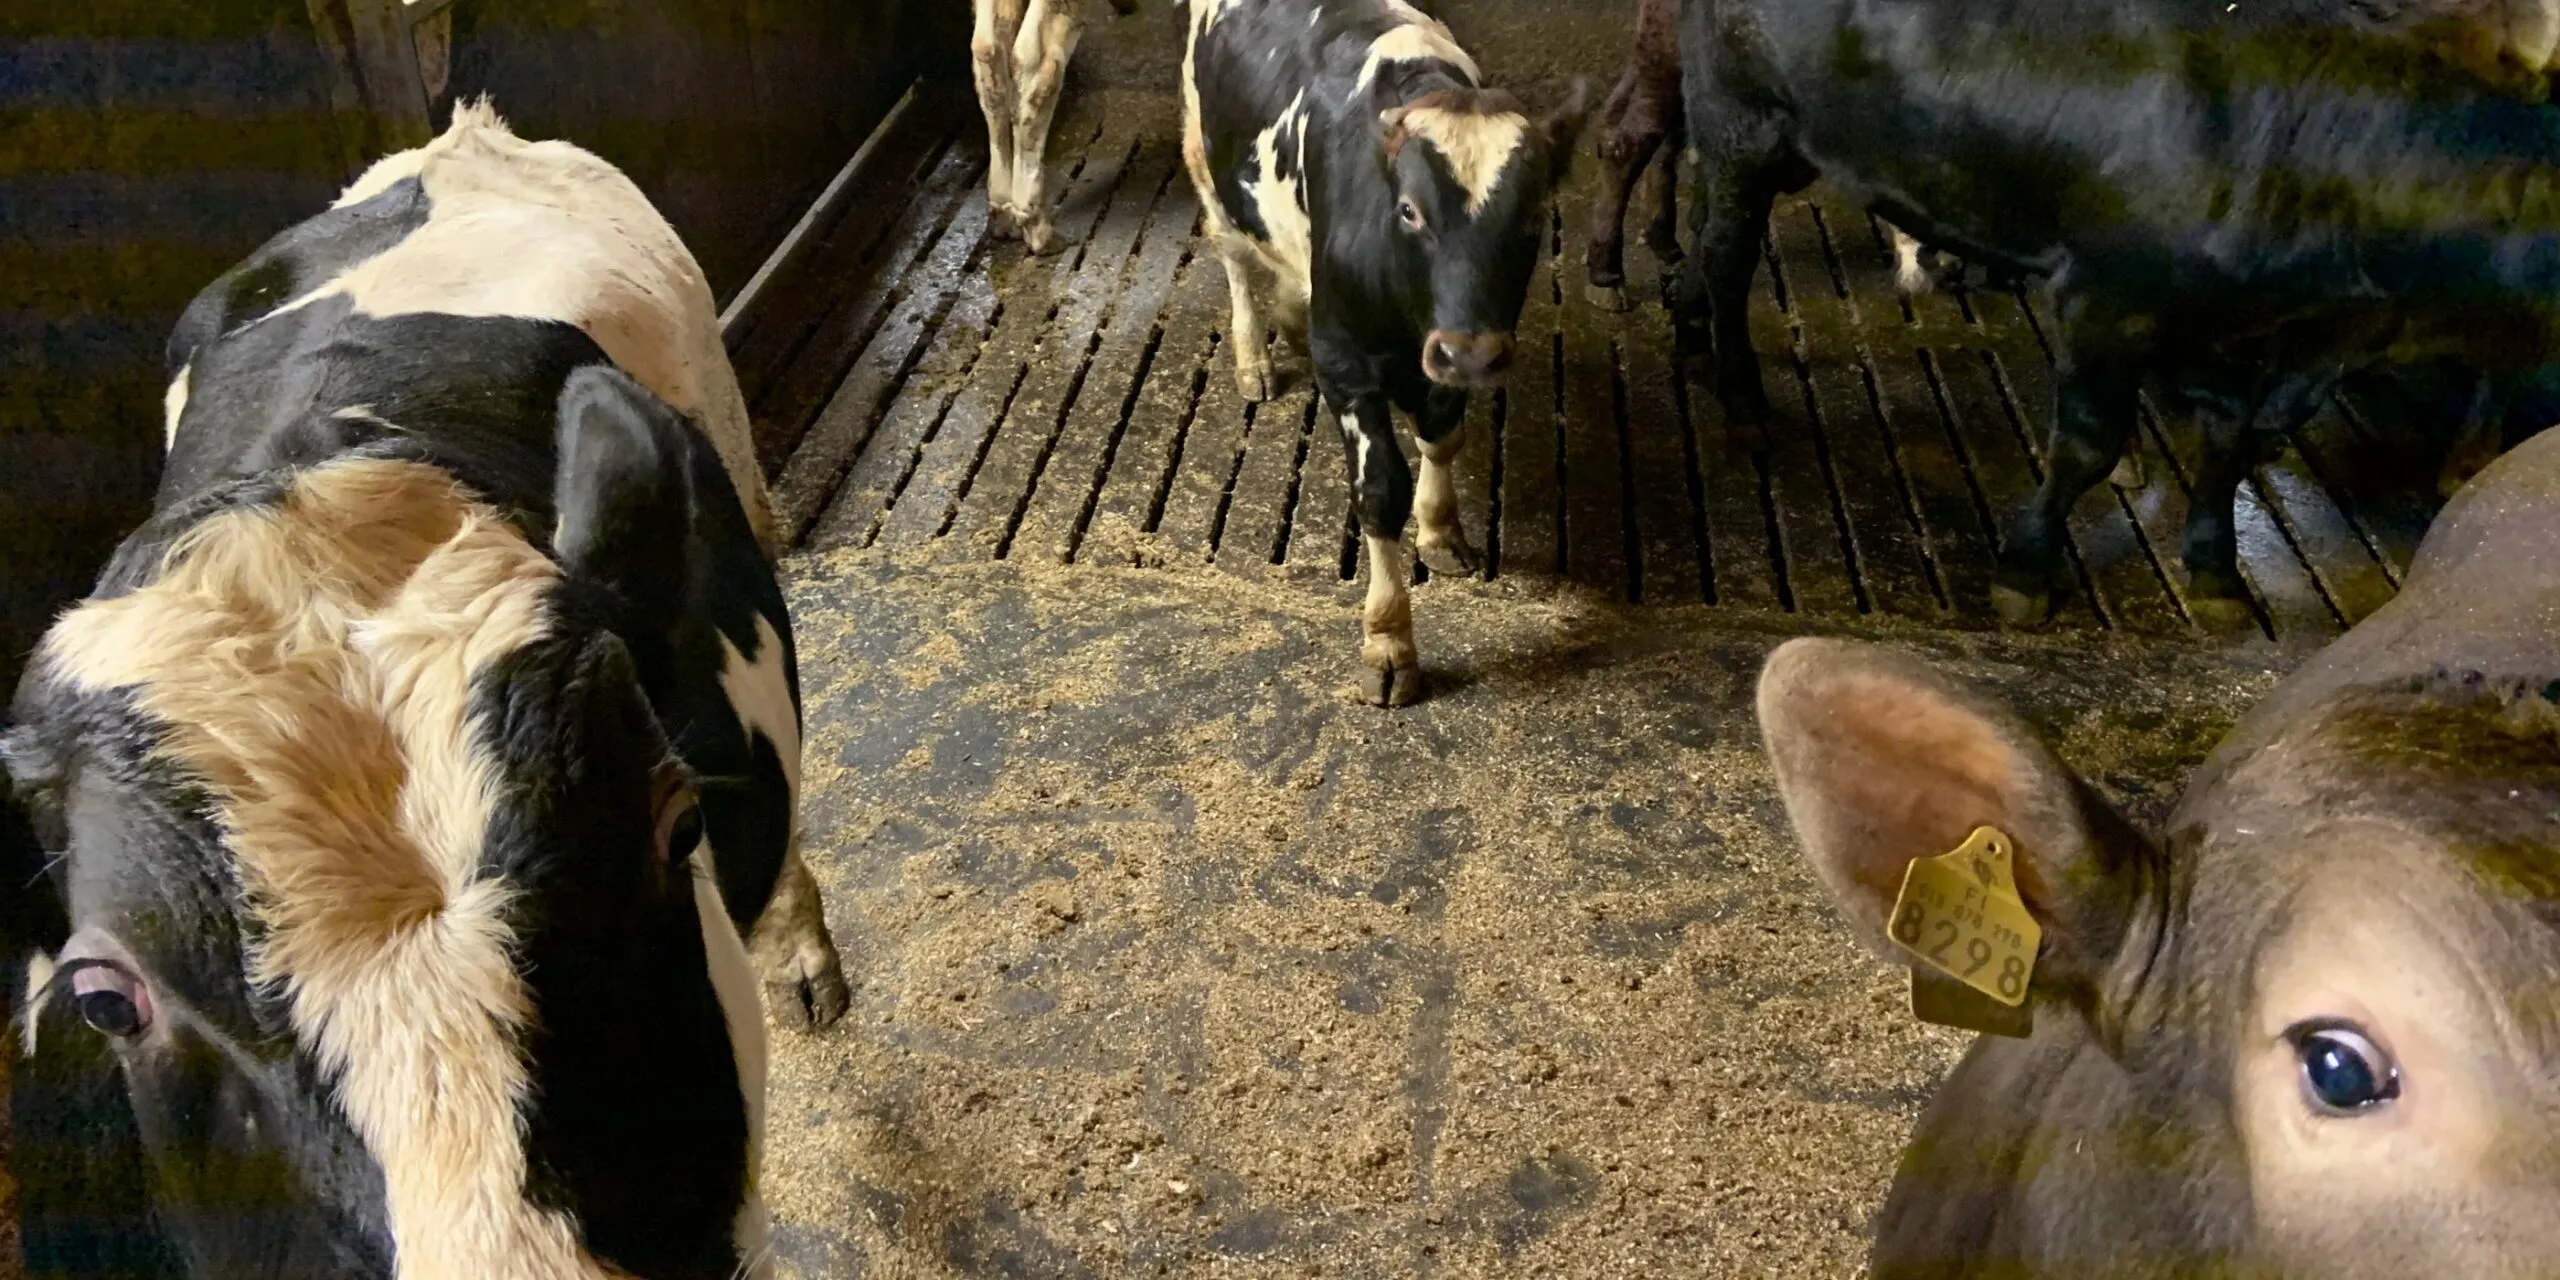 Snellman tar ett aktivt grepp i kampen mot spridningen av djursjukdomar – ekonomiskt stöd för producenternas hållbara lösningar